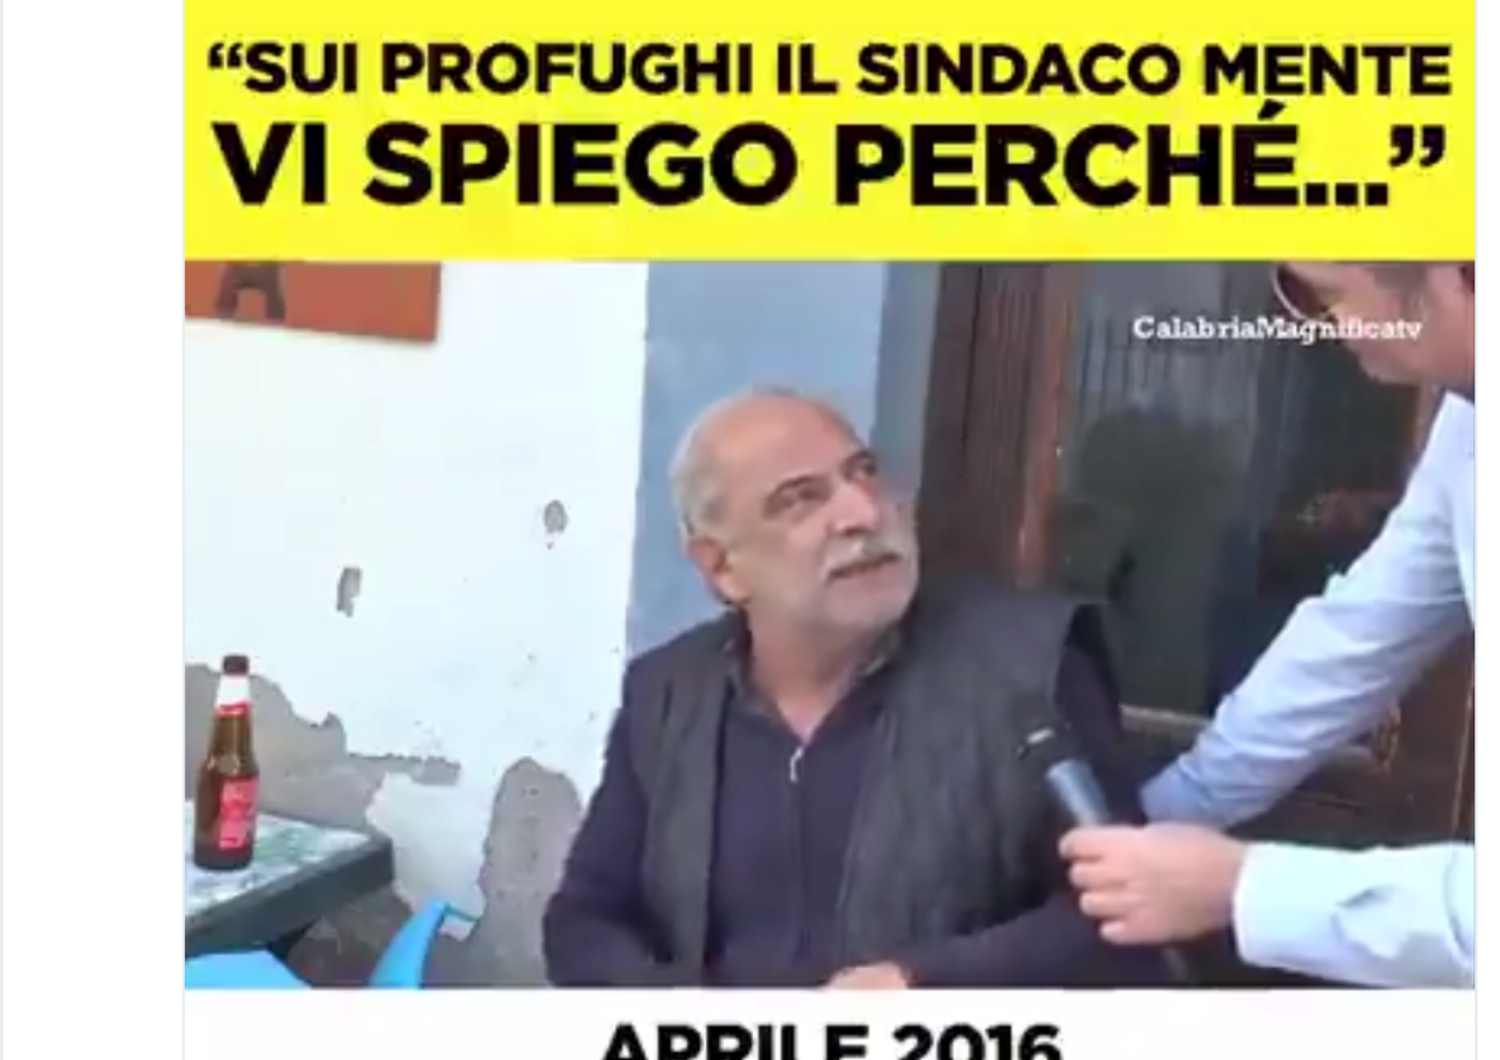 &nbsp;Il post condiviso da Matteo Salvini